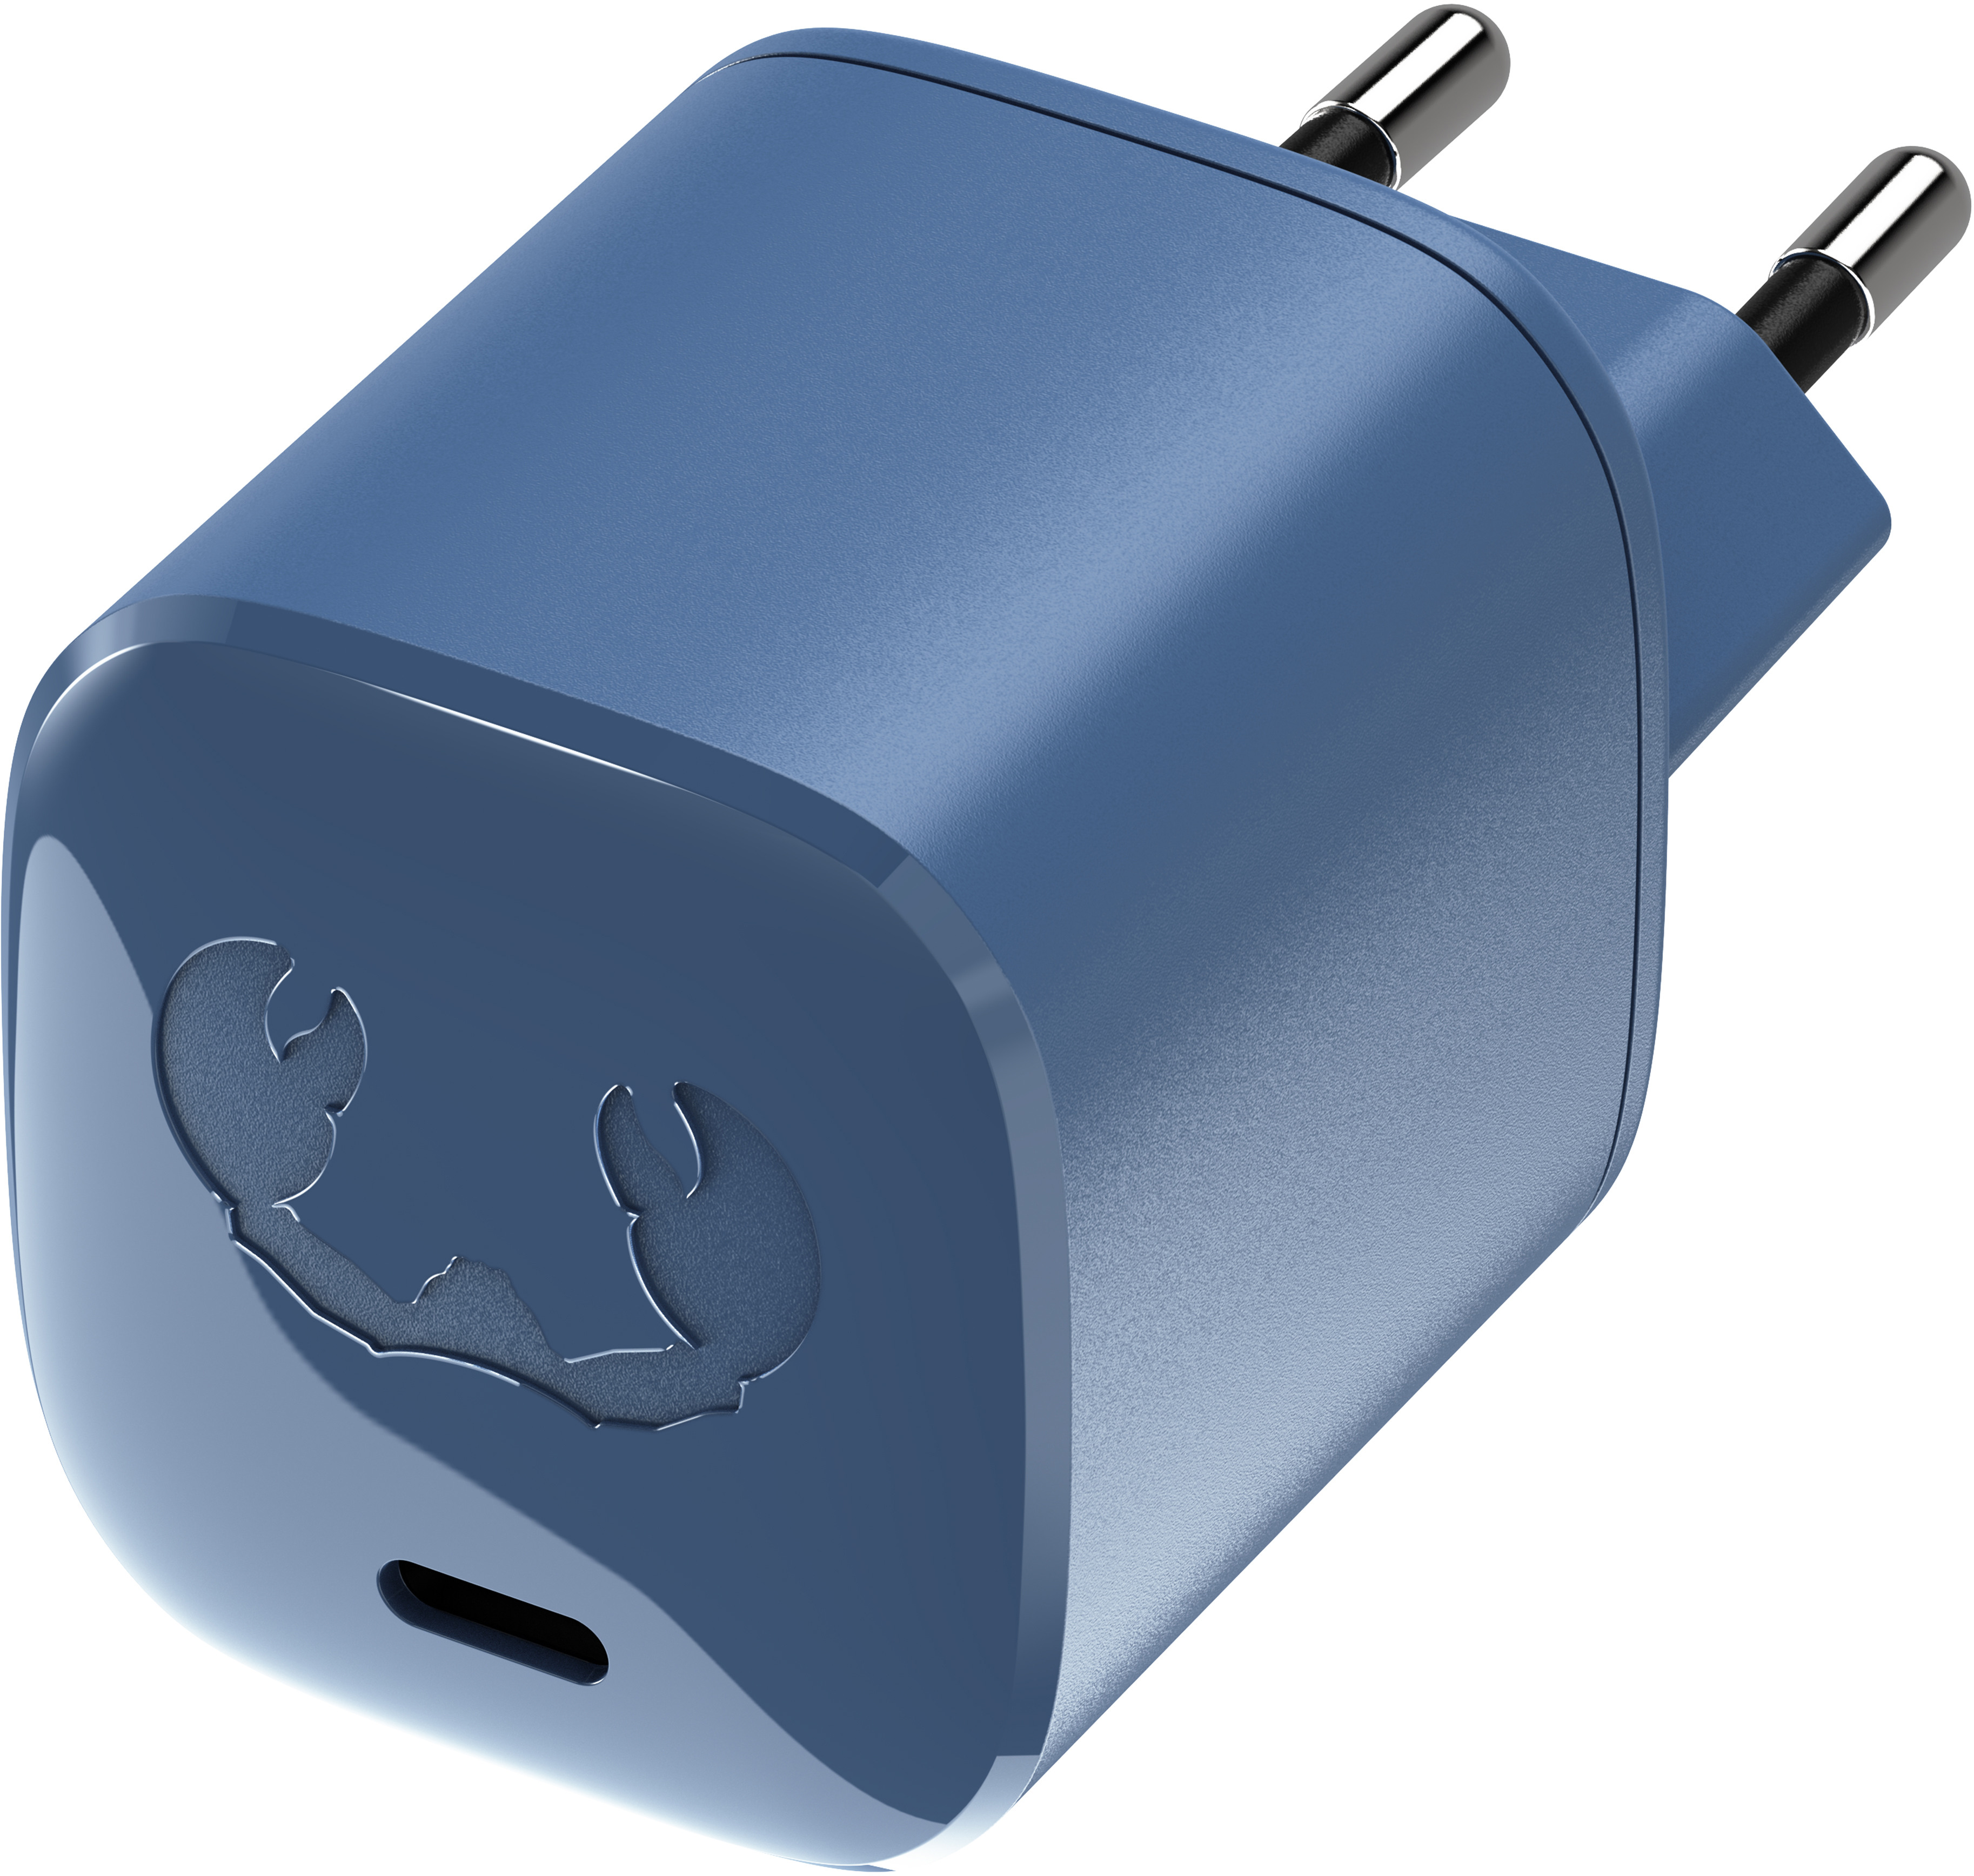 FRESH'N REBEL USB Mini Charger 30W 2WC700SB Steel Blue